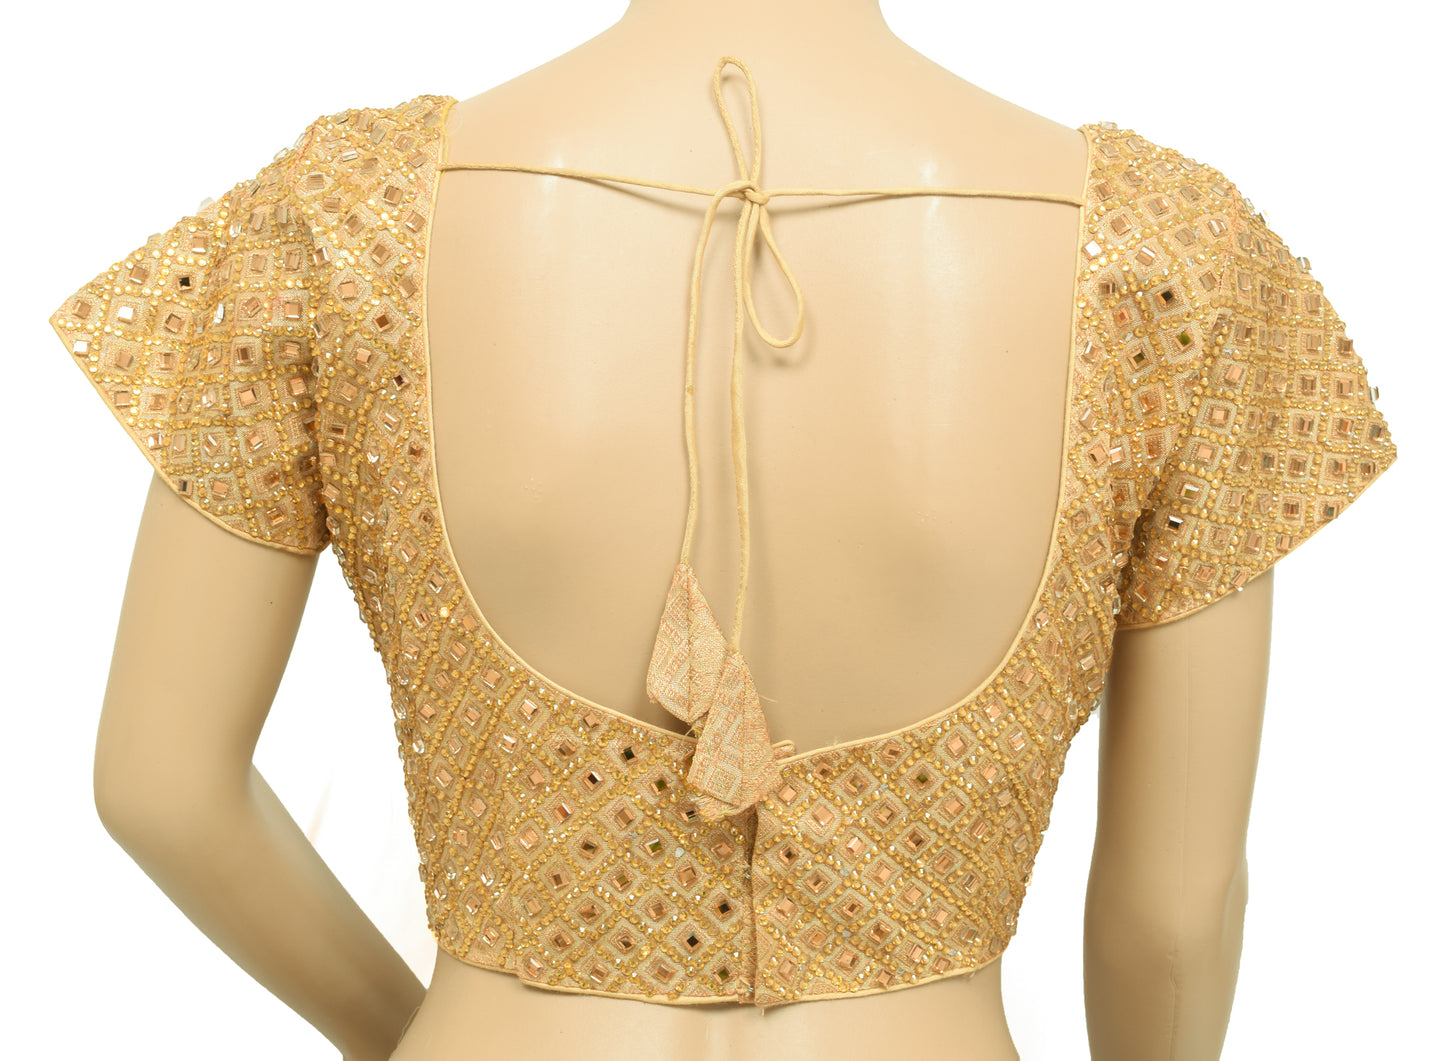 Sushila Vintage Designer Stitched Stunning Golden Mirror Work Sari Blouse Top